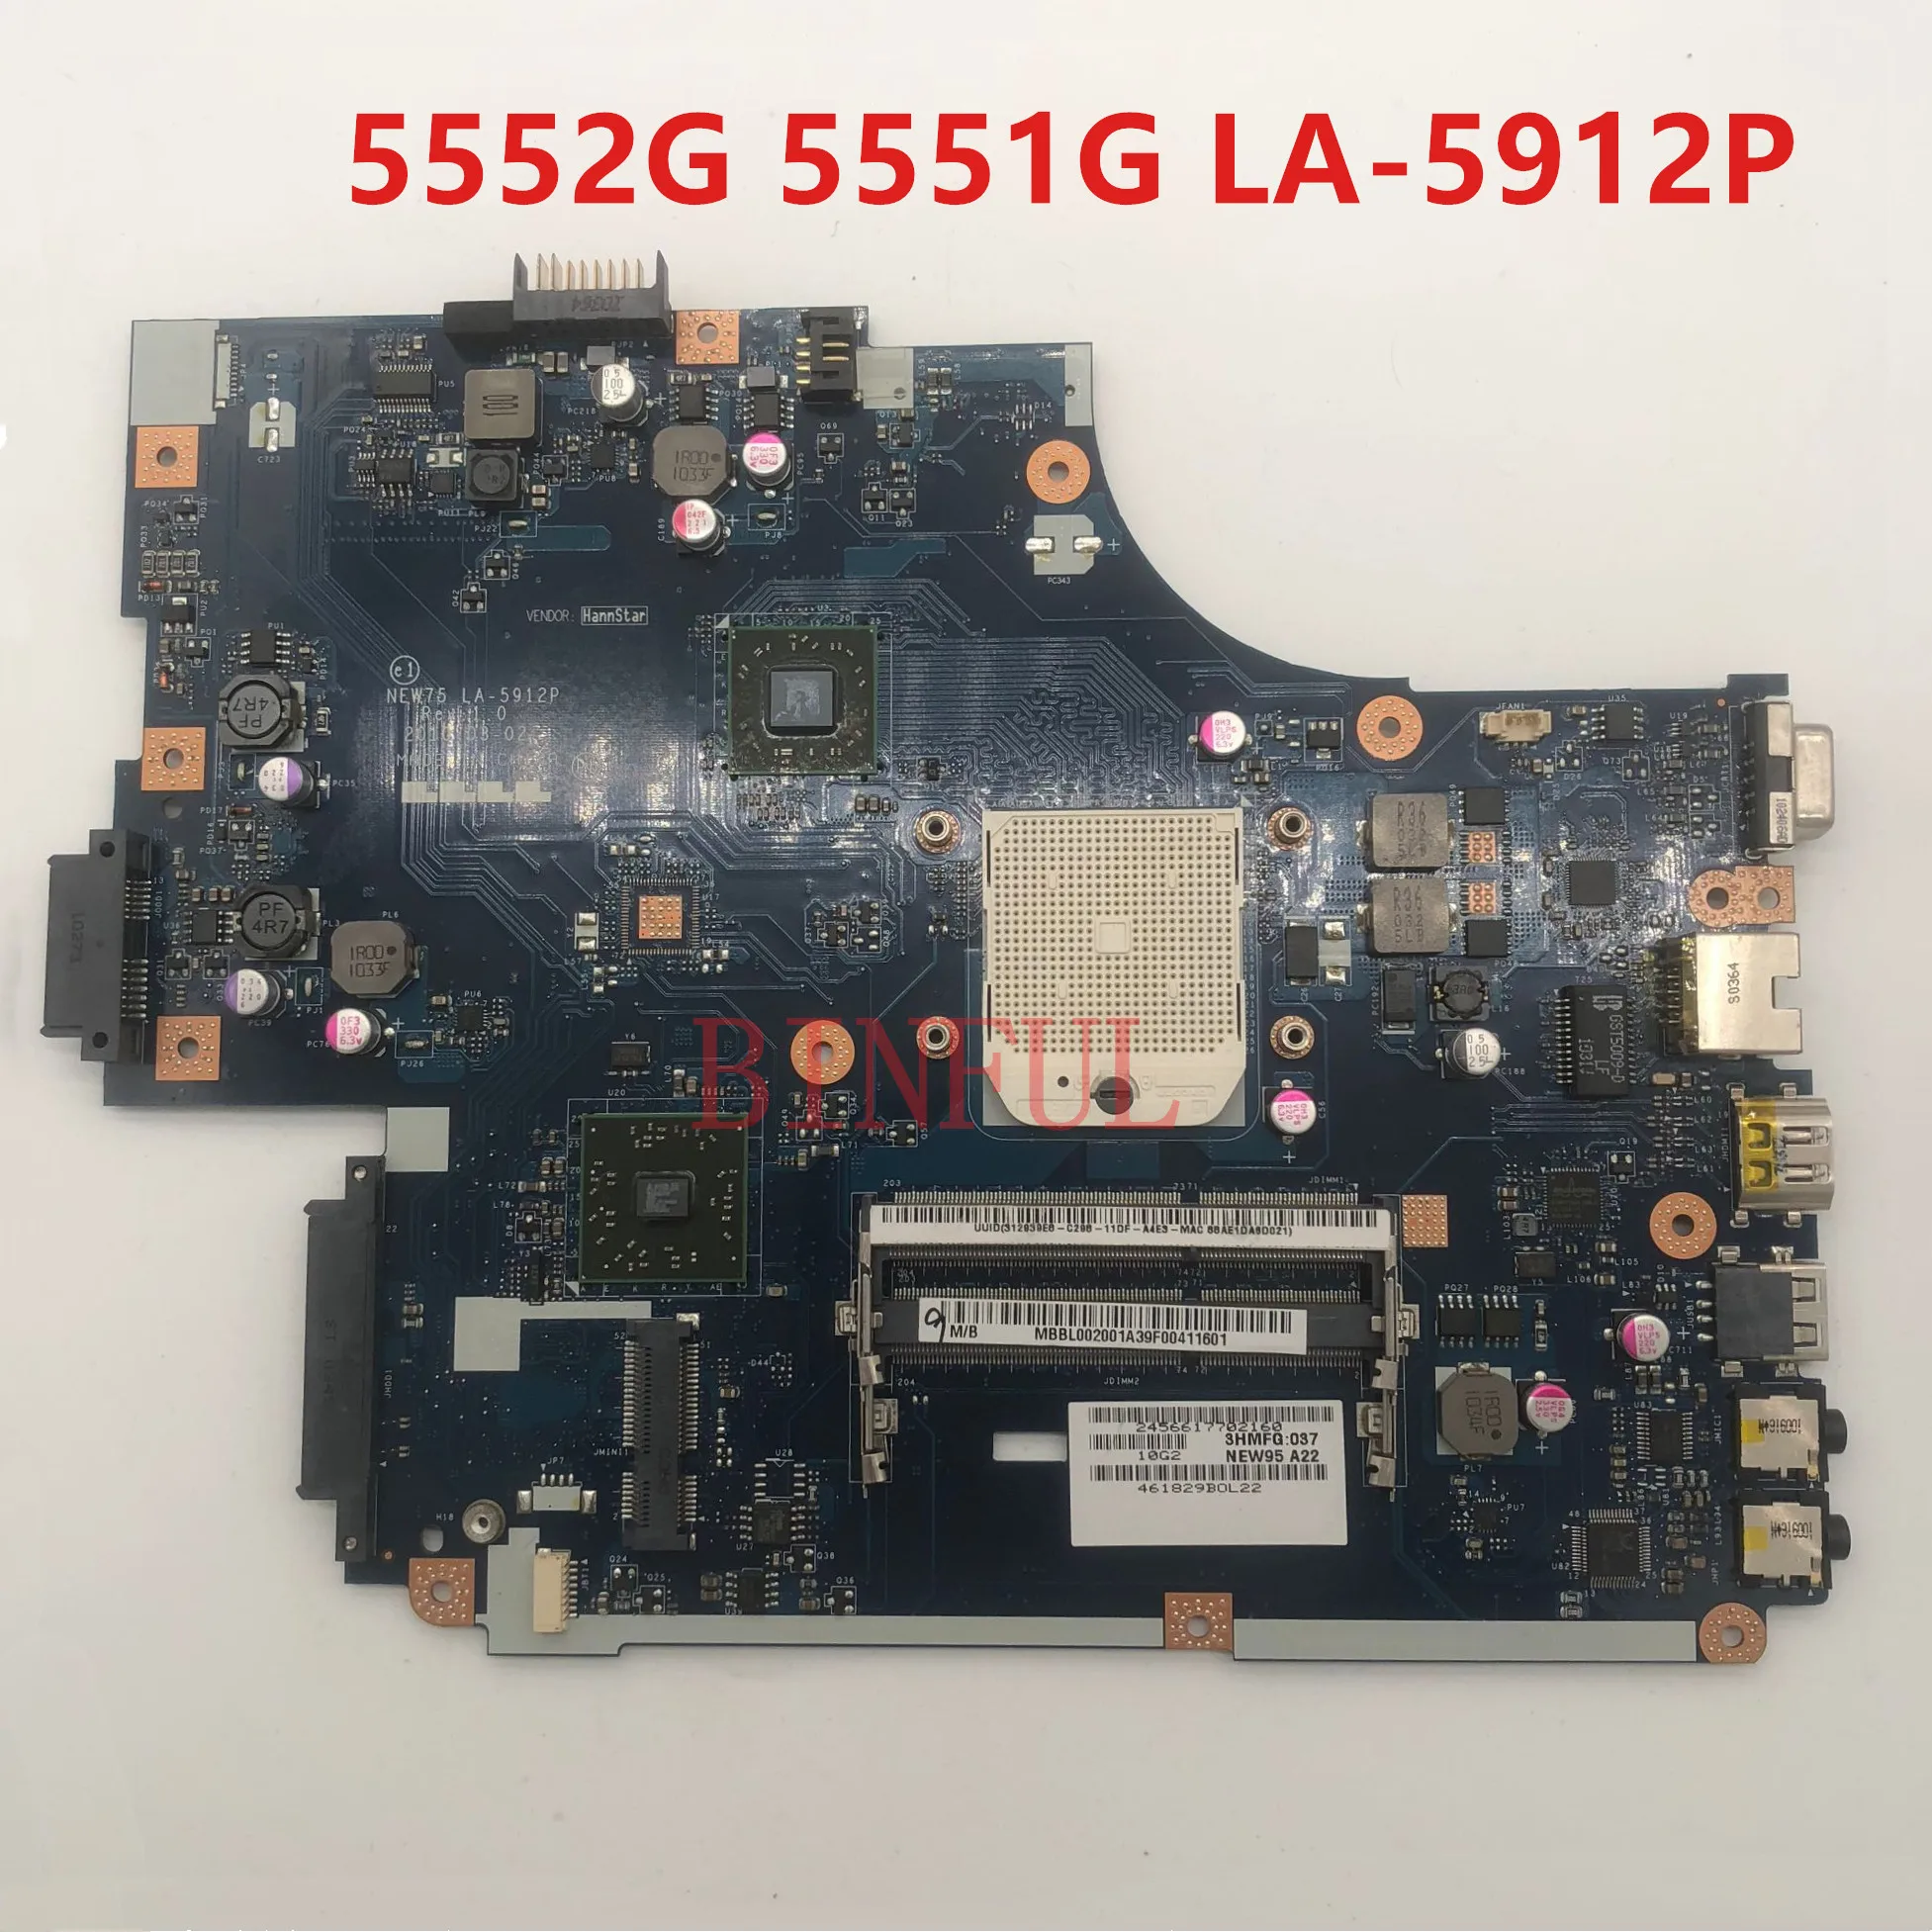 Высокое качество для Aspire 5552G 5551G 5551 Материнская плата ноутбука NEW75 LA-5912p A55 DDR3 полностью протестирована